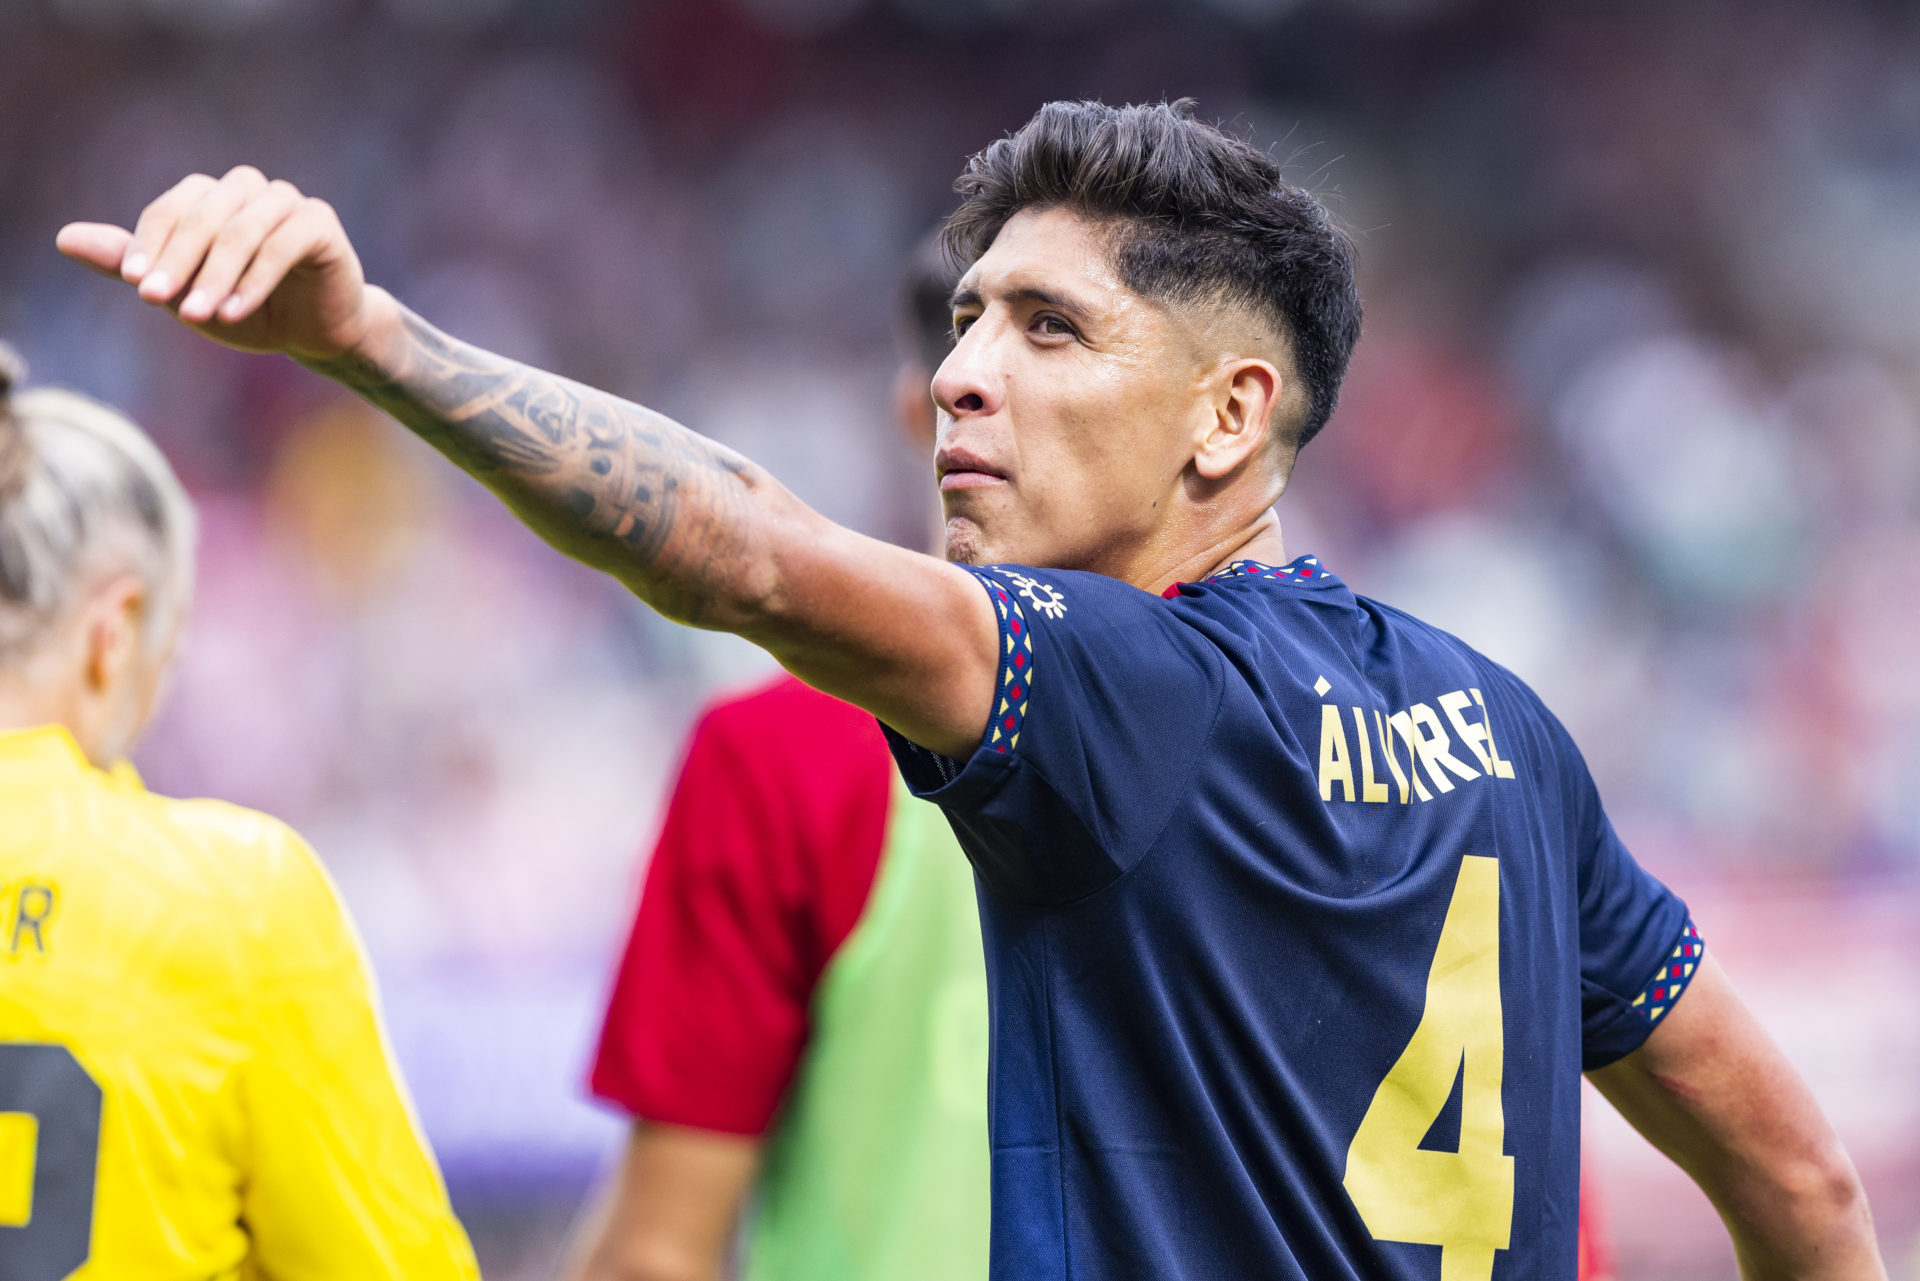 Arsenal want Alvarez